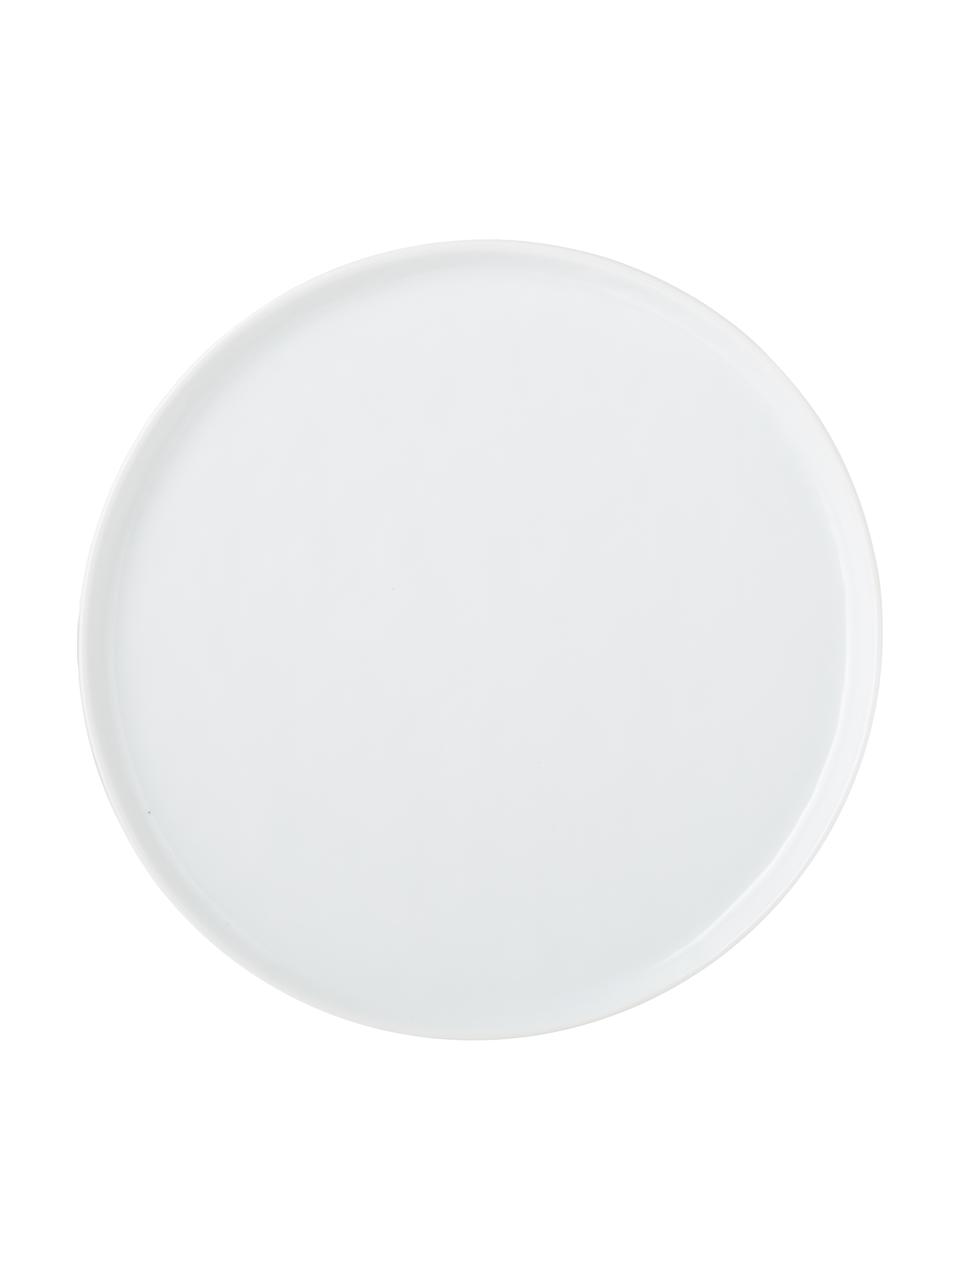 Raňajkový tanier s nerovným povrchom Porcelino, 4 ks, Porcelán, úmyselne nerovný, Biela, Ø 22 cm